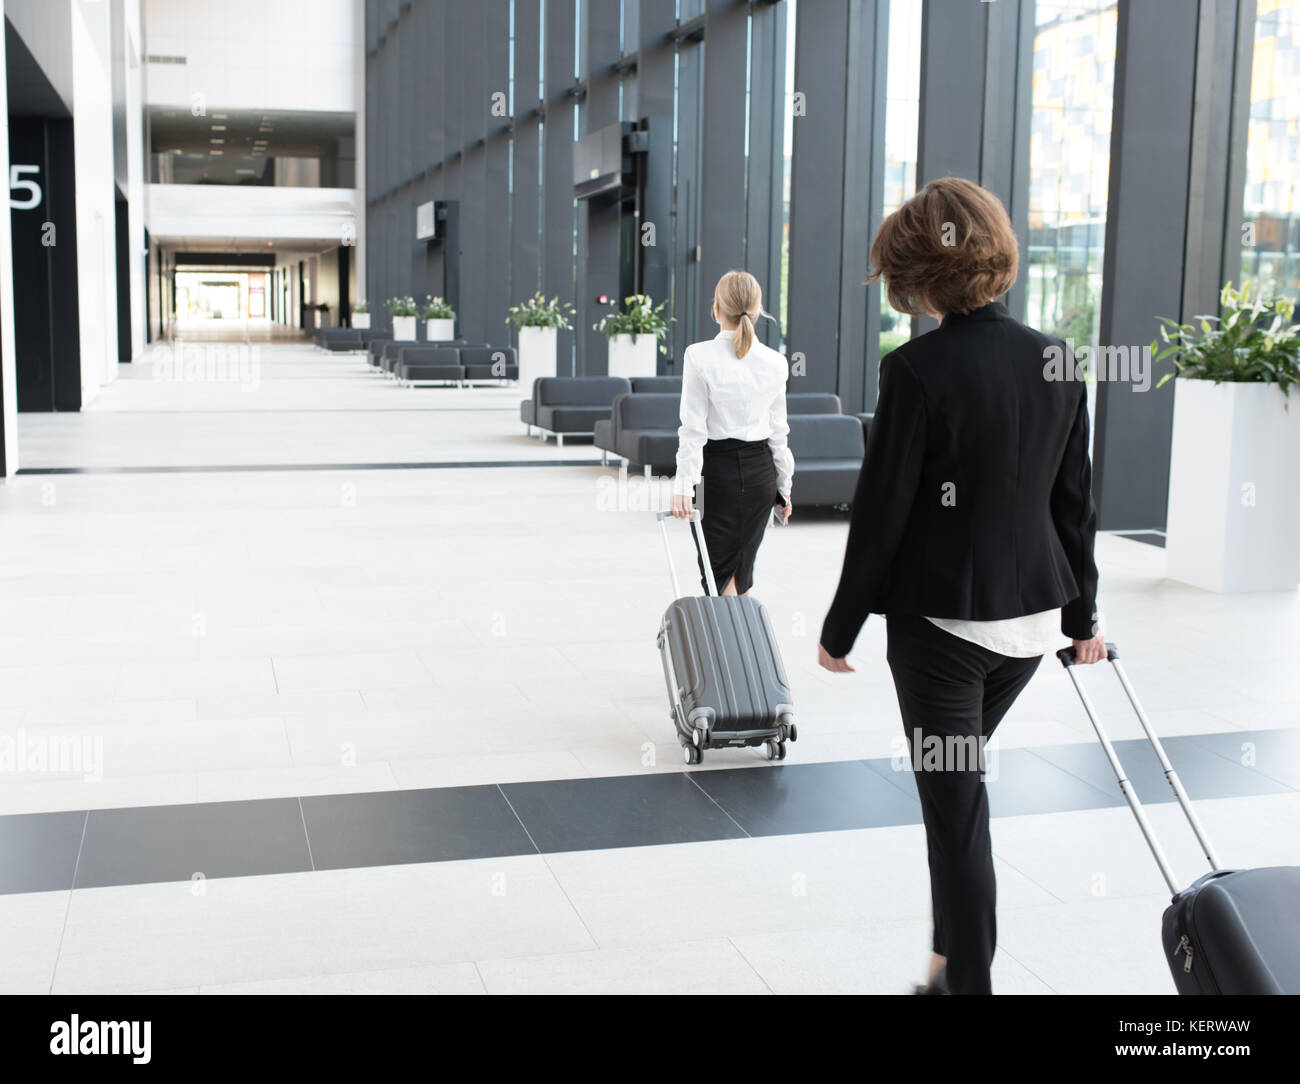 Les gens d'affaires dans l'Habillement formel walking in airport terminal avec des valises Banque D'Images